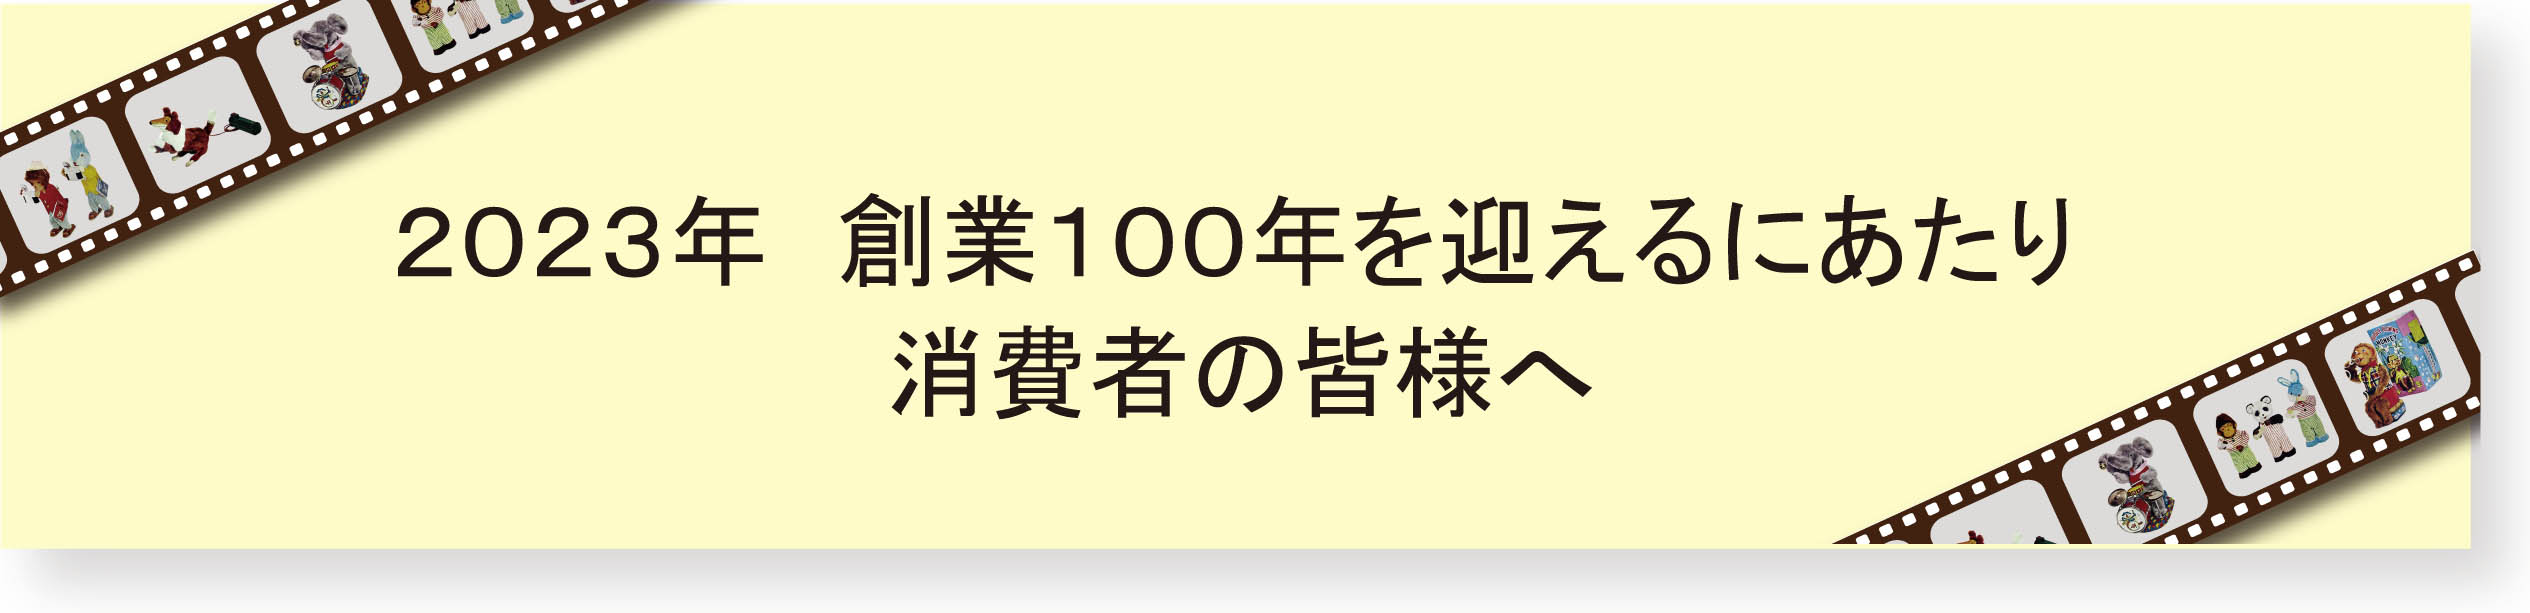 100_banner.jpg